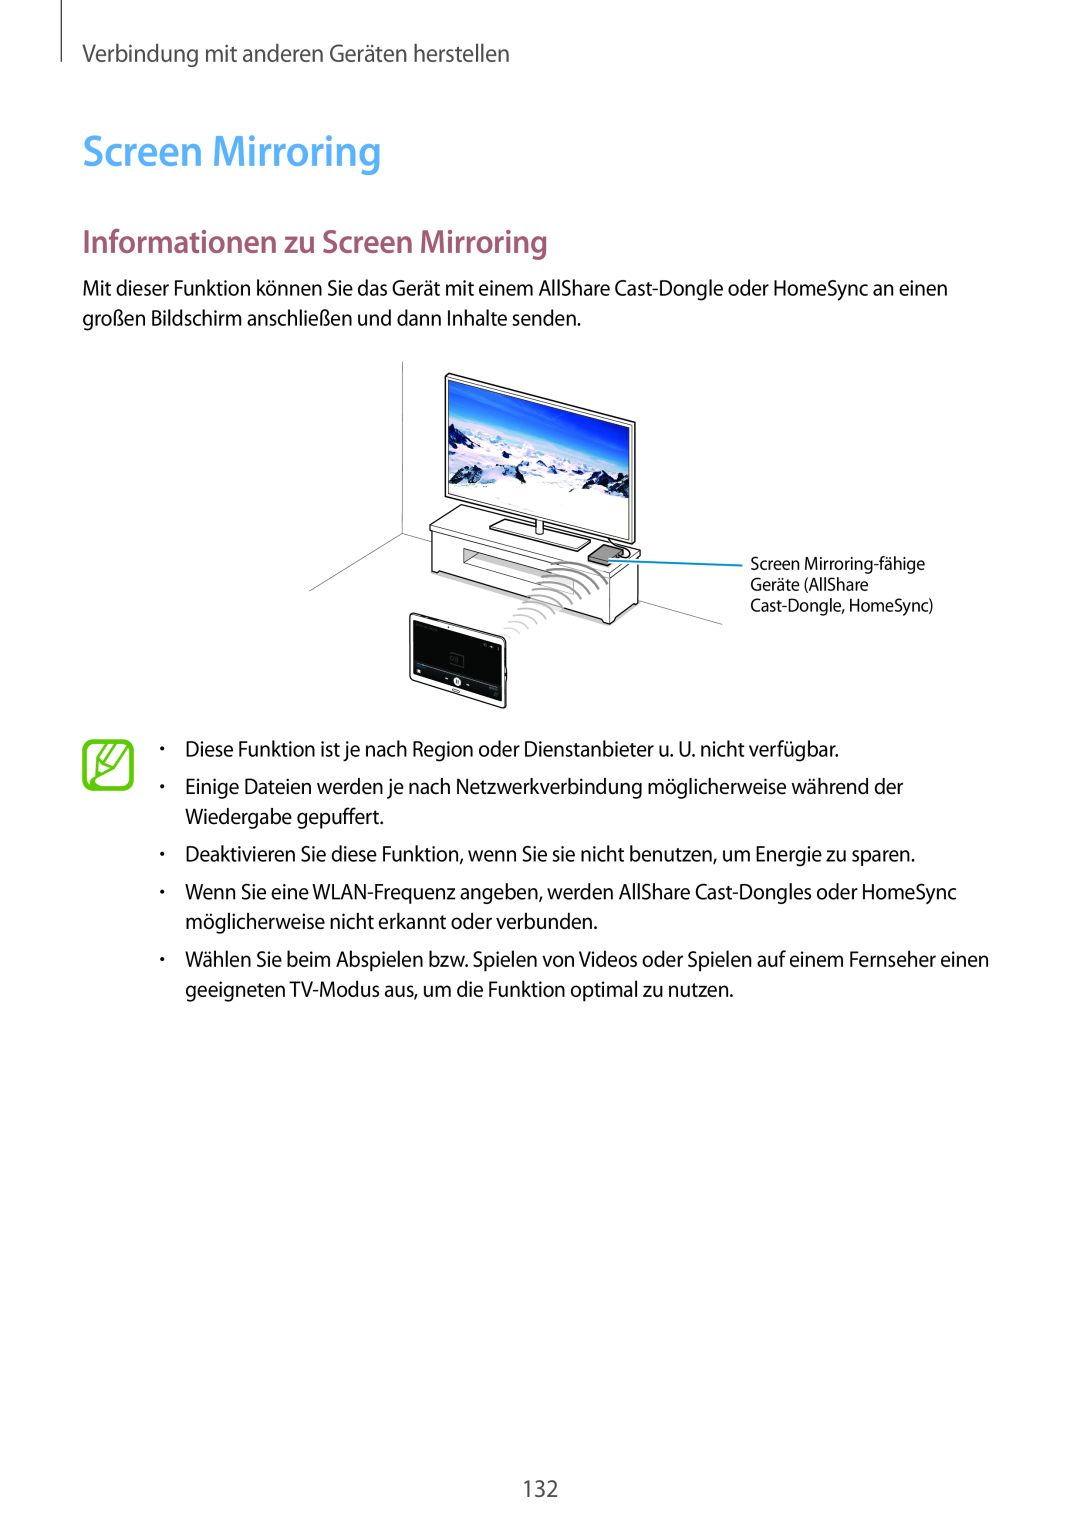 Samsung SM-T800NTSAXEF, SM-T800NZWAEUR Informationen zu Screen Mirroring, Verbindung mit anderen Geräten herstellen 